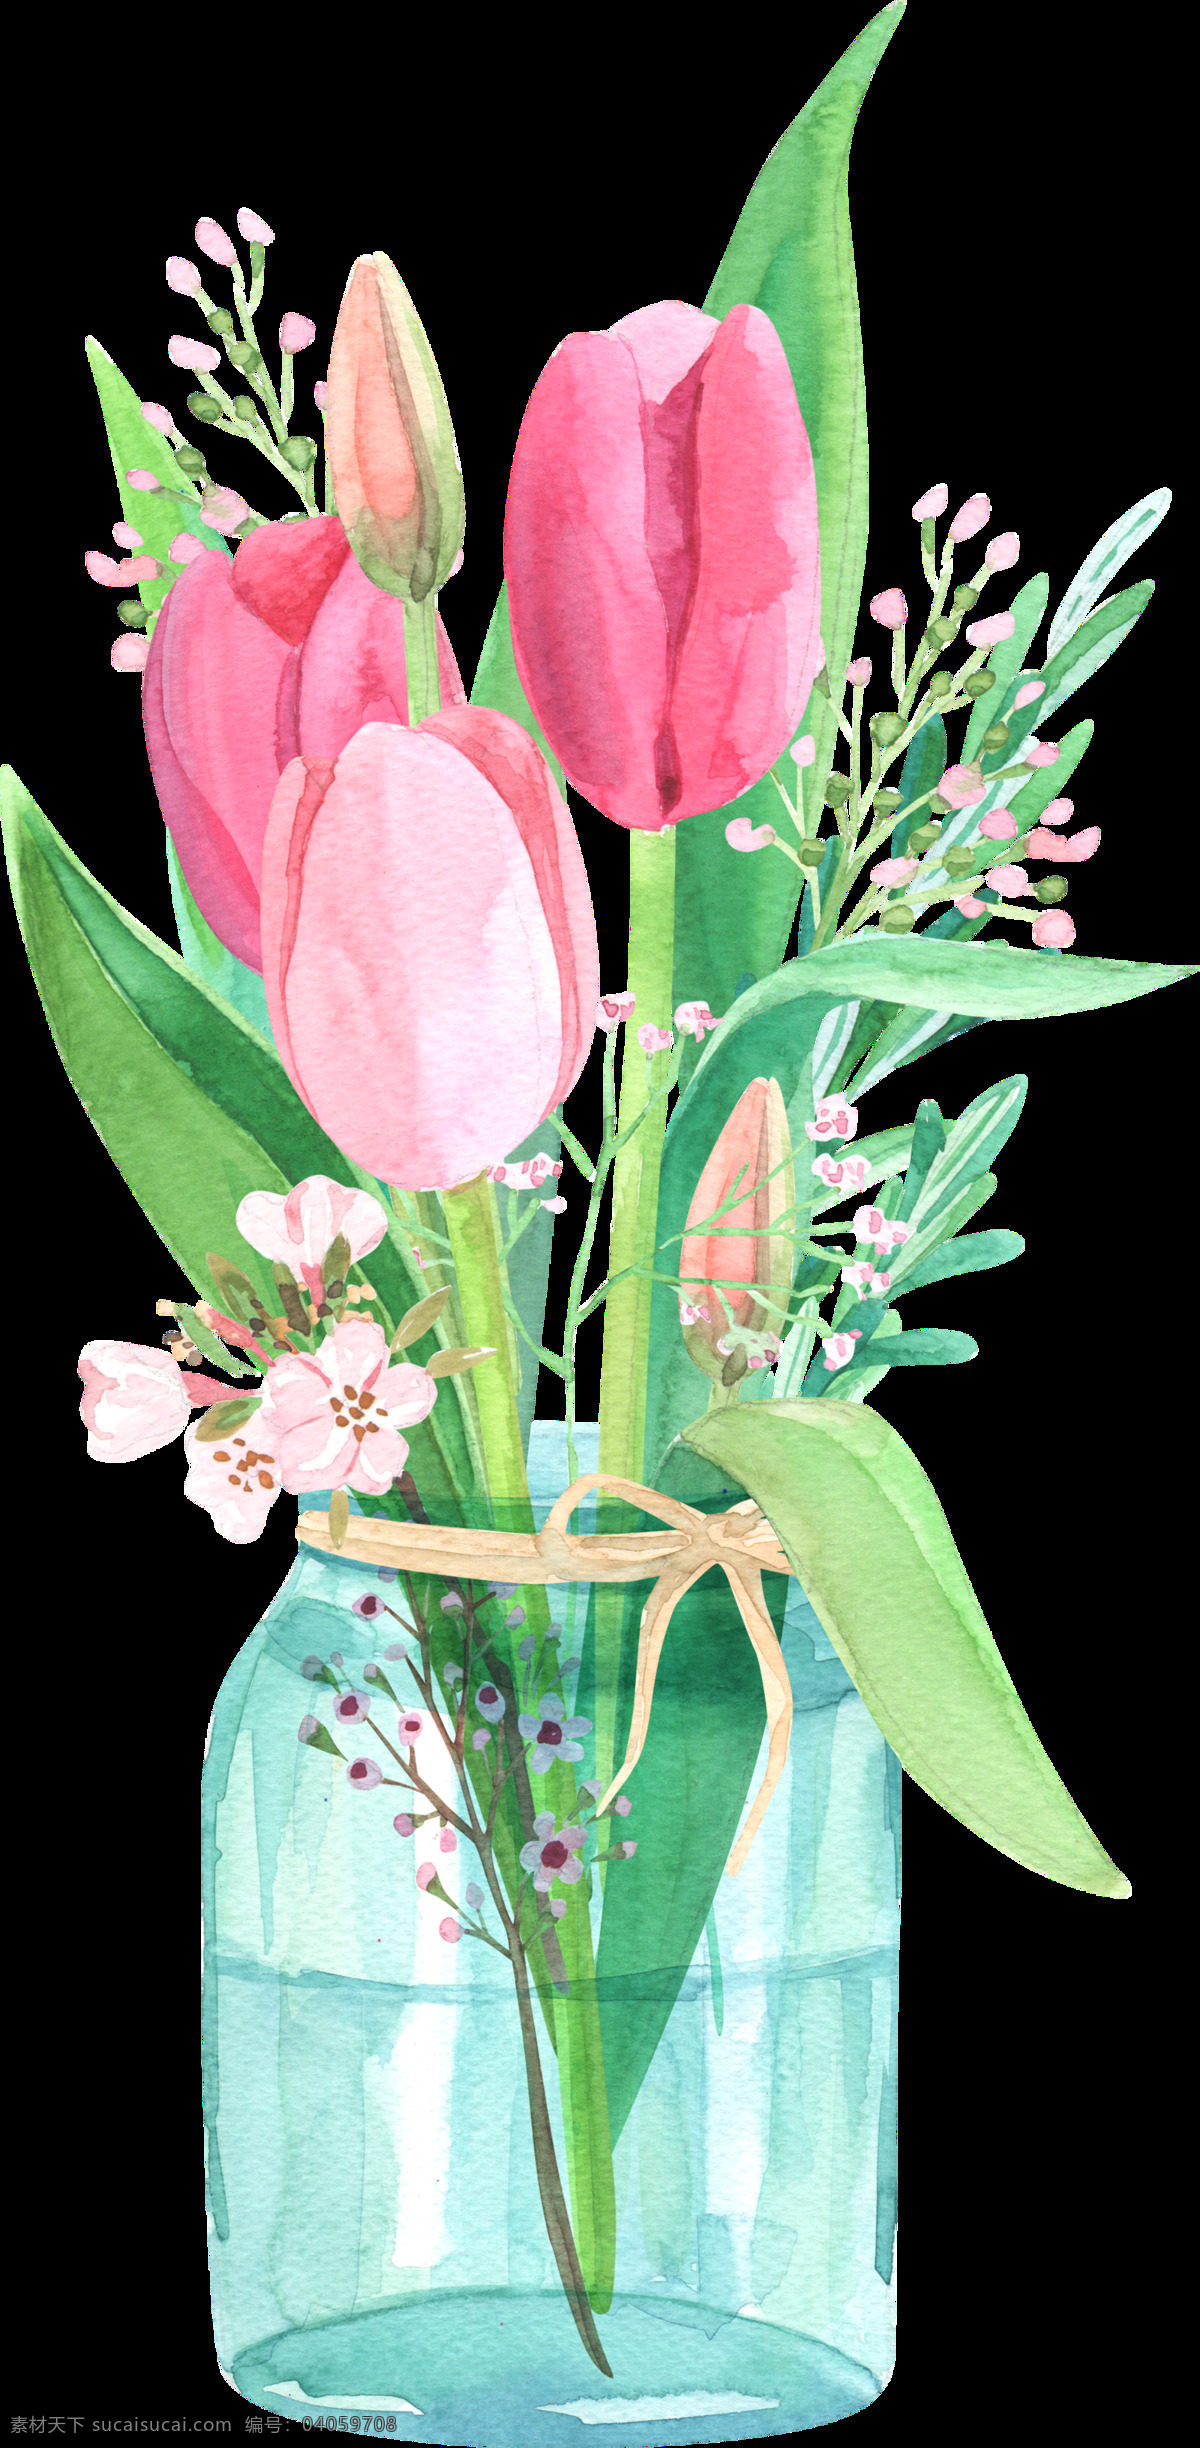 透明花瓶素材 透明 水彩 手绘 鲜花 叶子 绿色 粉色 花瓶 矢量素材 设计素材